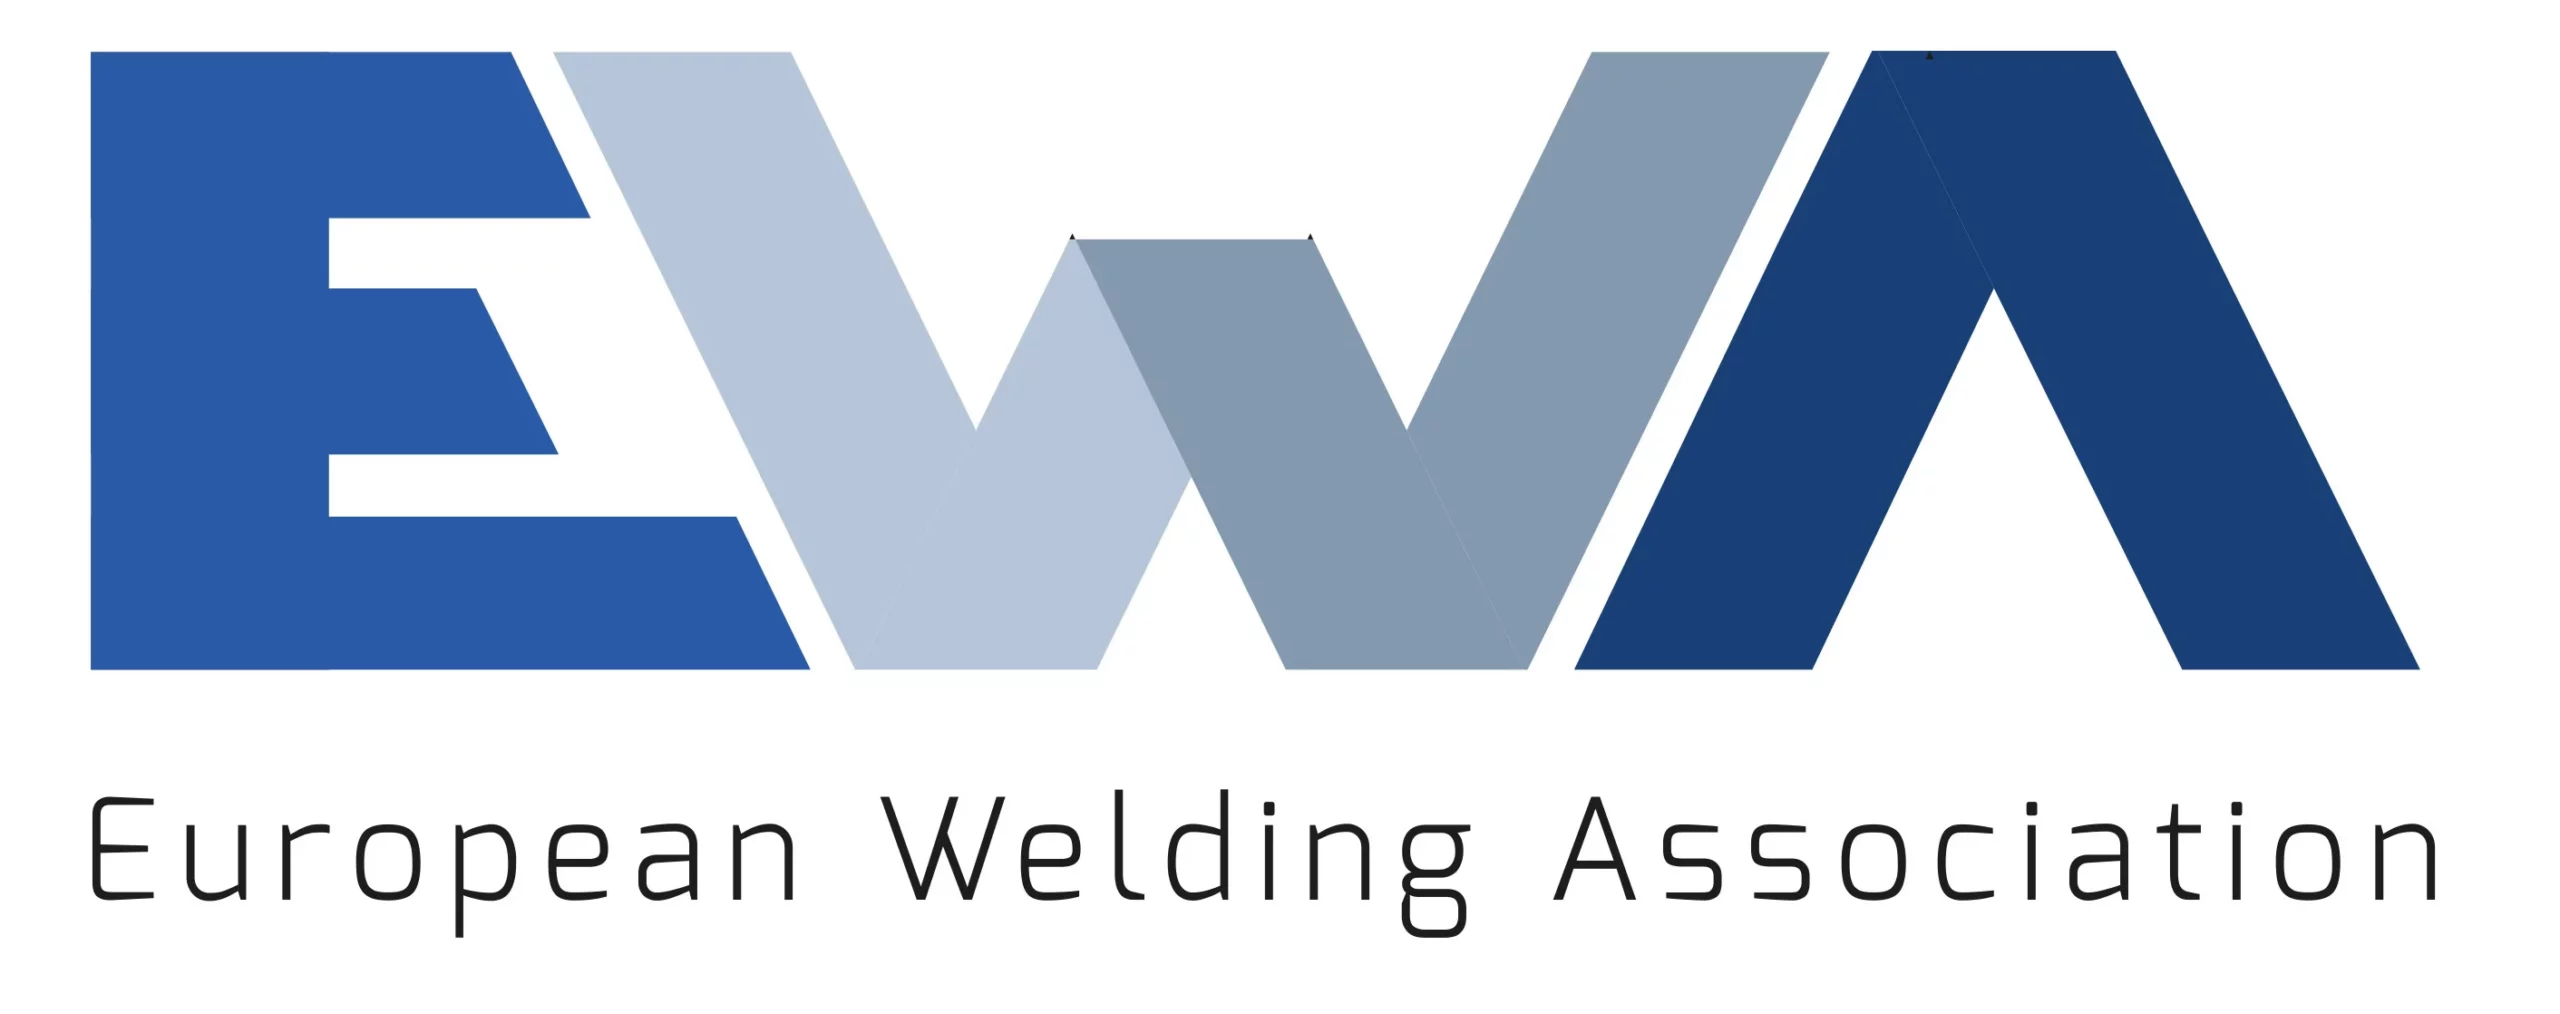 EWA - European welding association